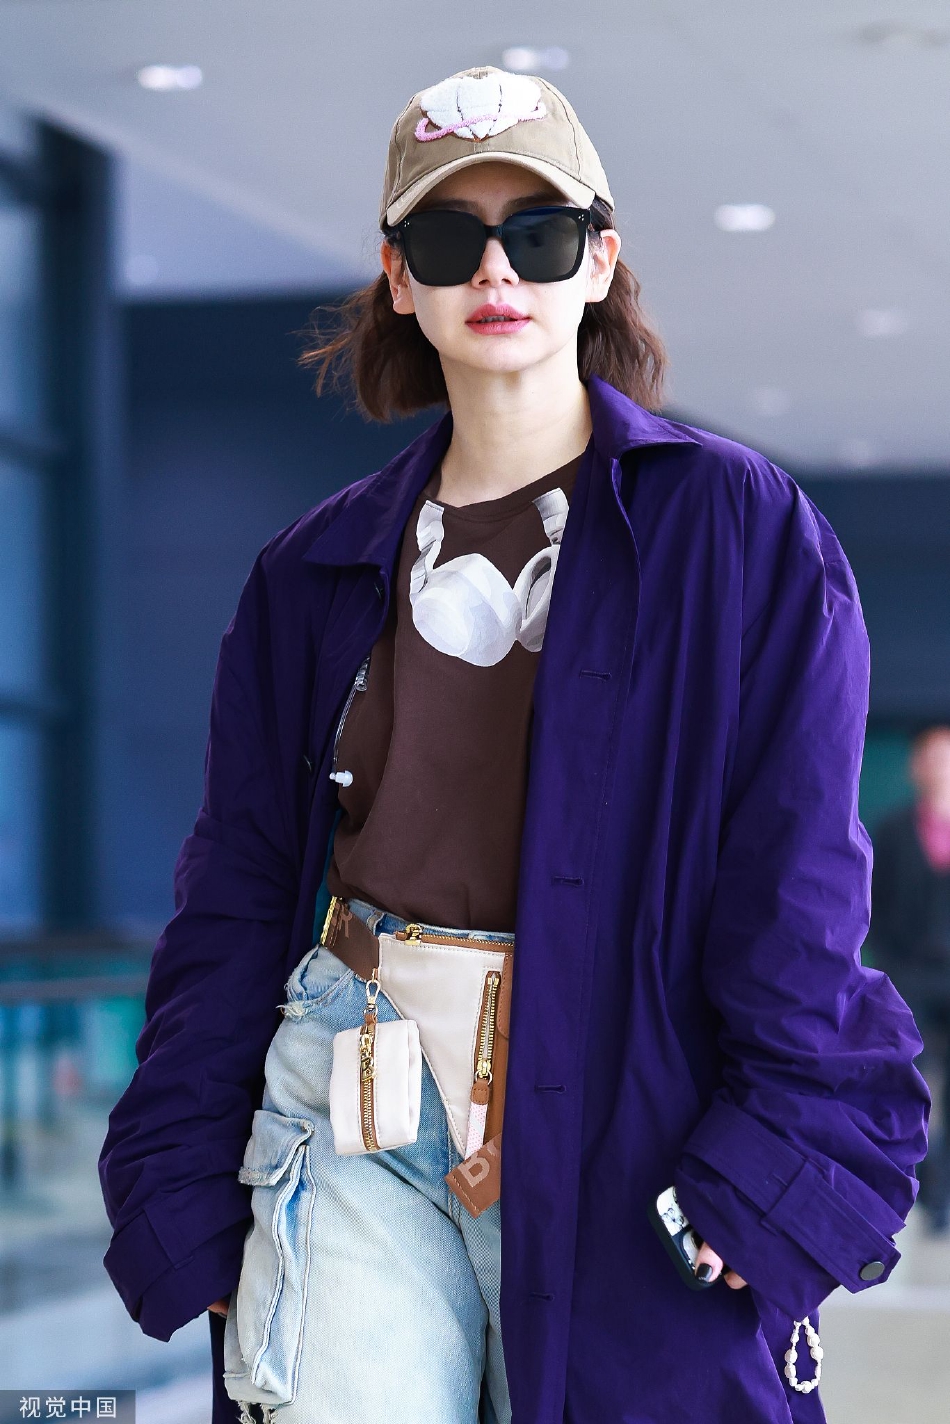 组图:戚薇穿搭时尚现身机场 紫色外套配工装裤酷拽随性